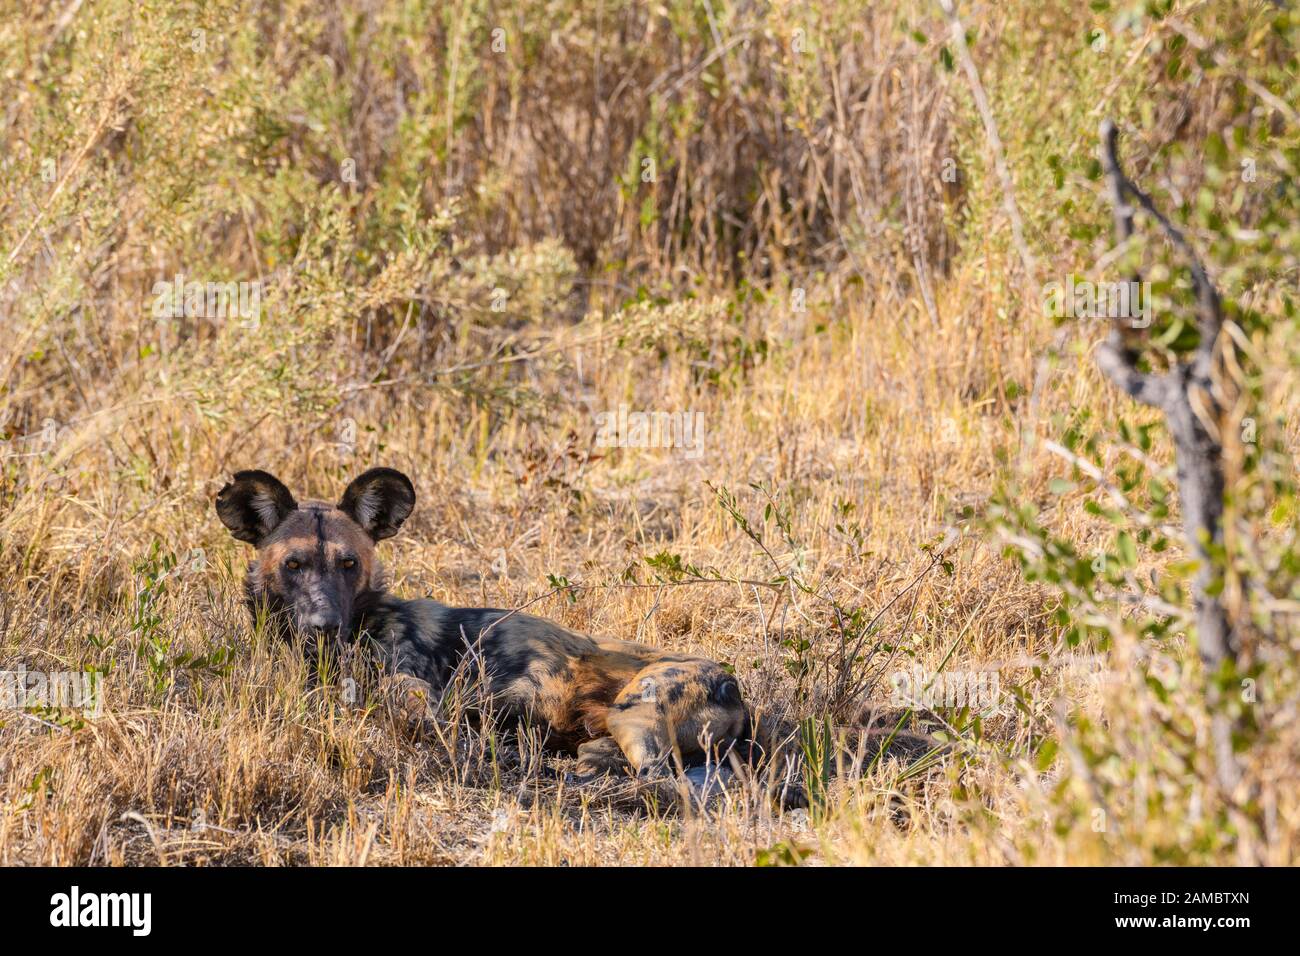 Chien sauvage africain, Lycaon pictus, Macatoo, Okavanago Delta, Botswana. Également connu sous le nom de loup Peint. Banque D'Images